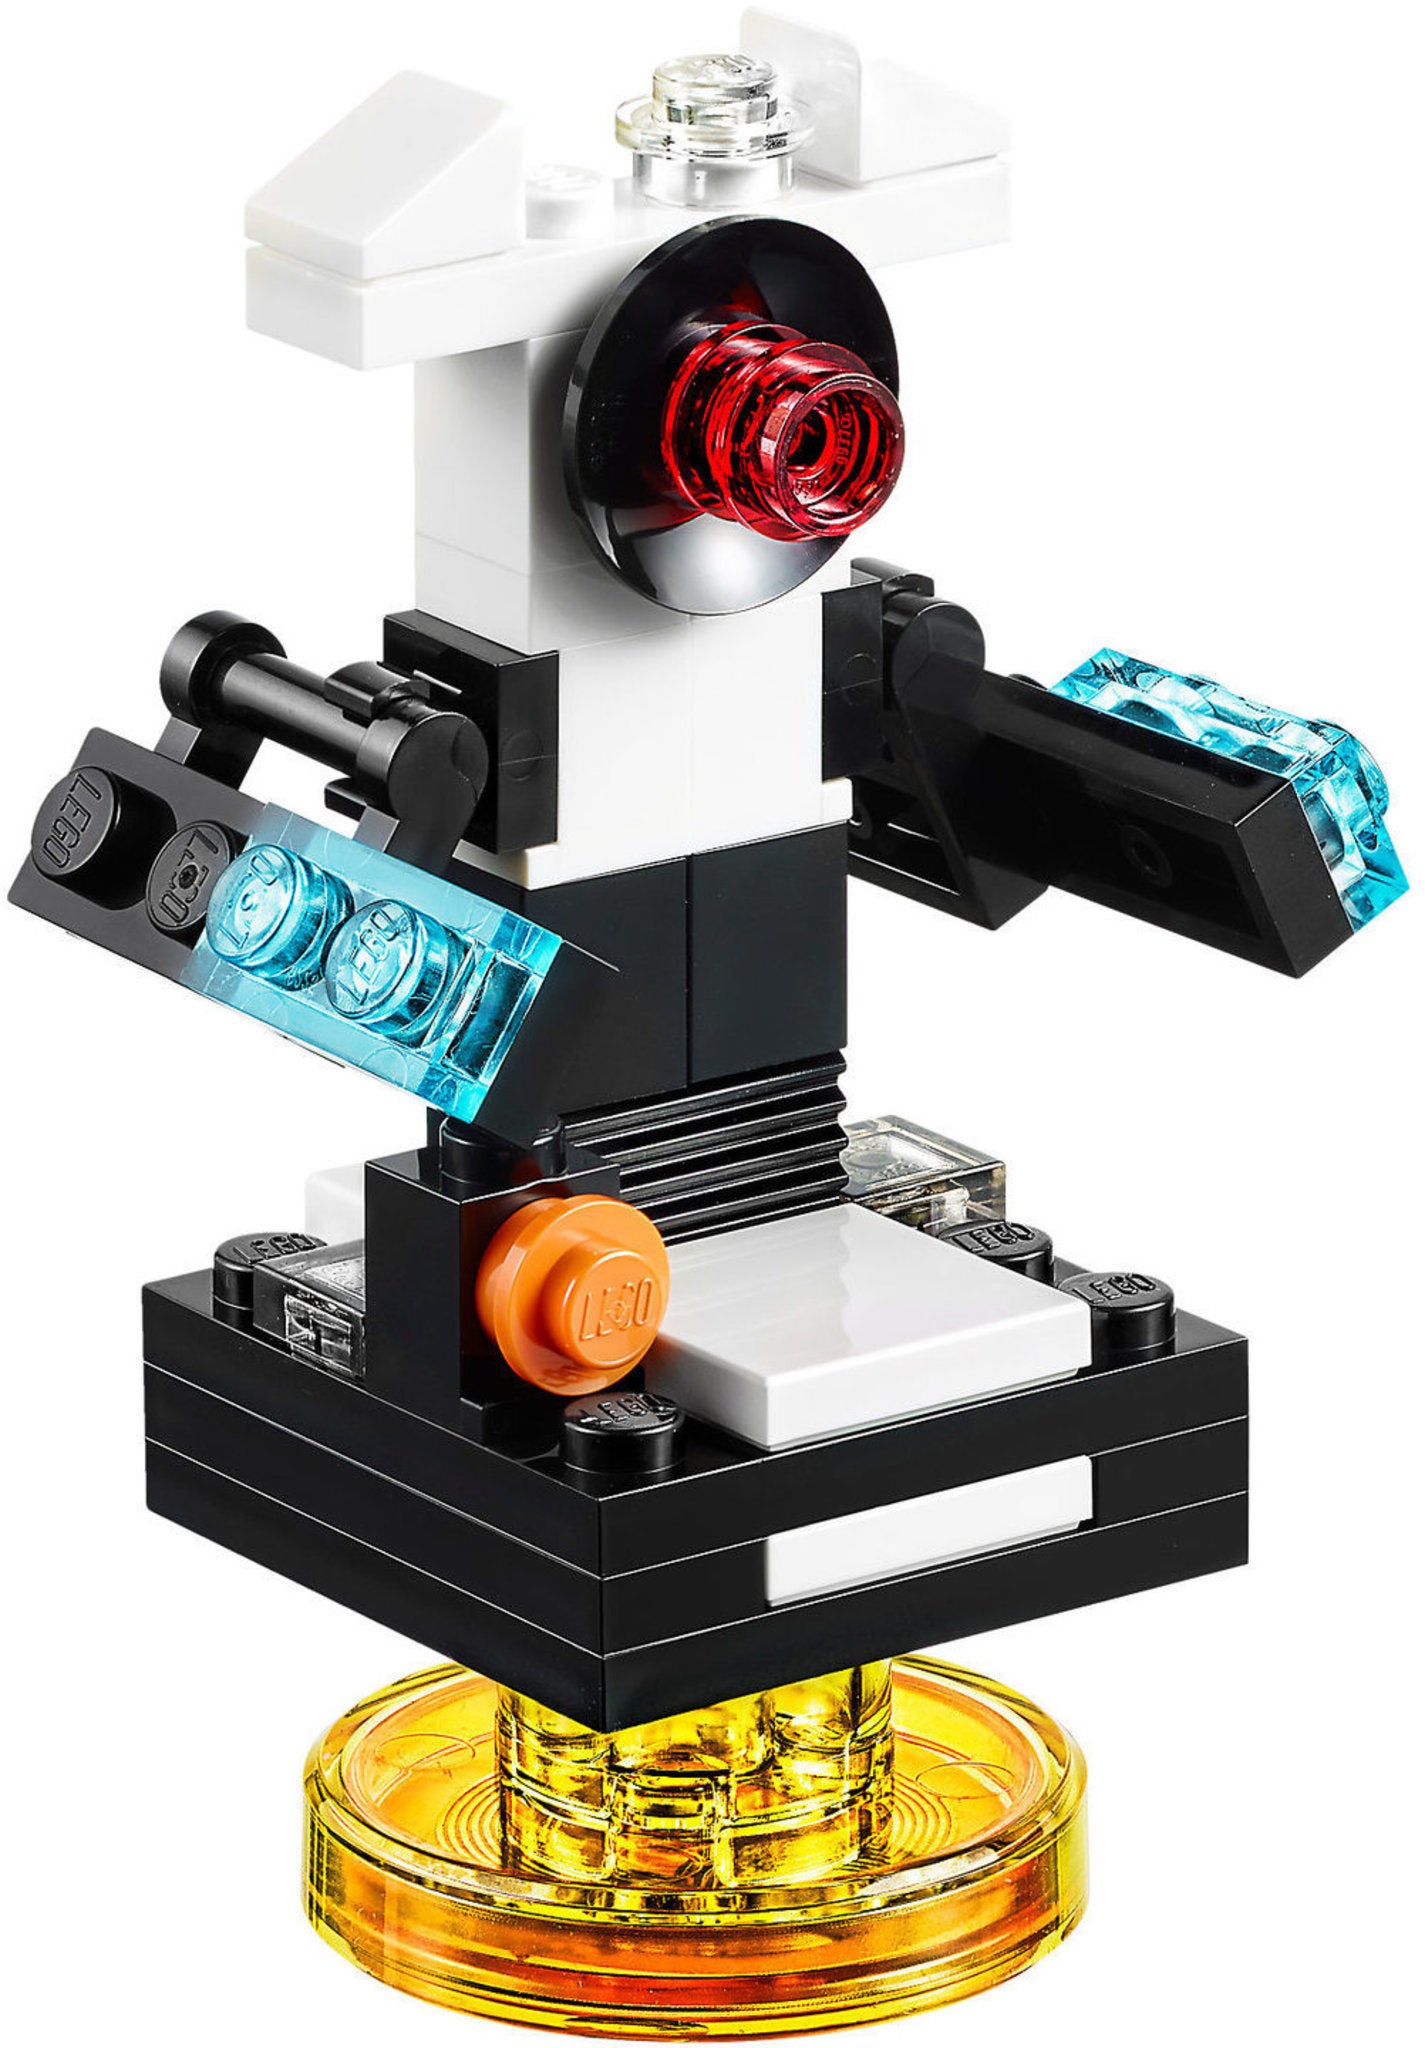 71256 LEGO Dimension - Gremlins - Team Pack: Gremlins